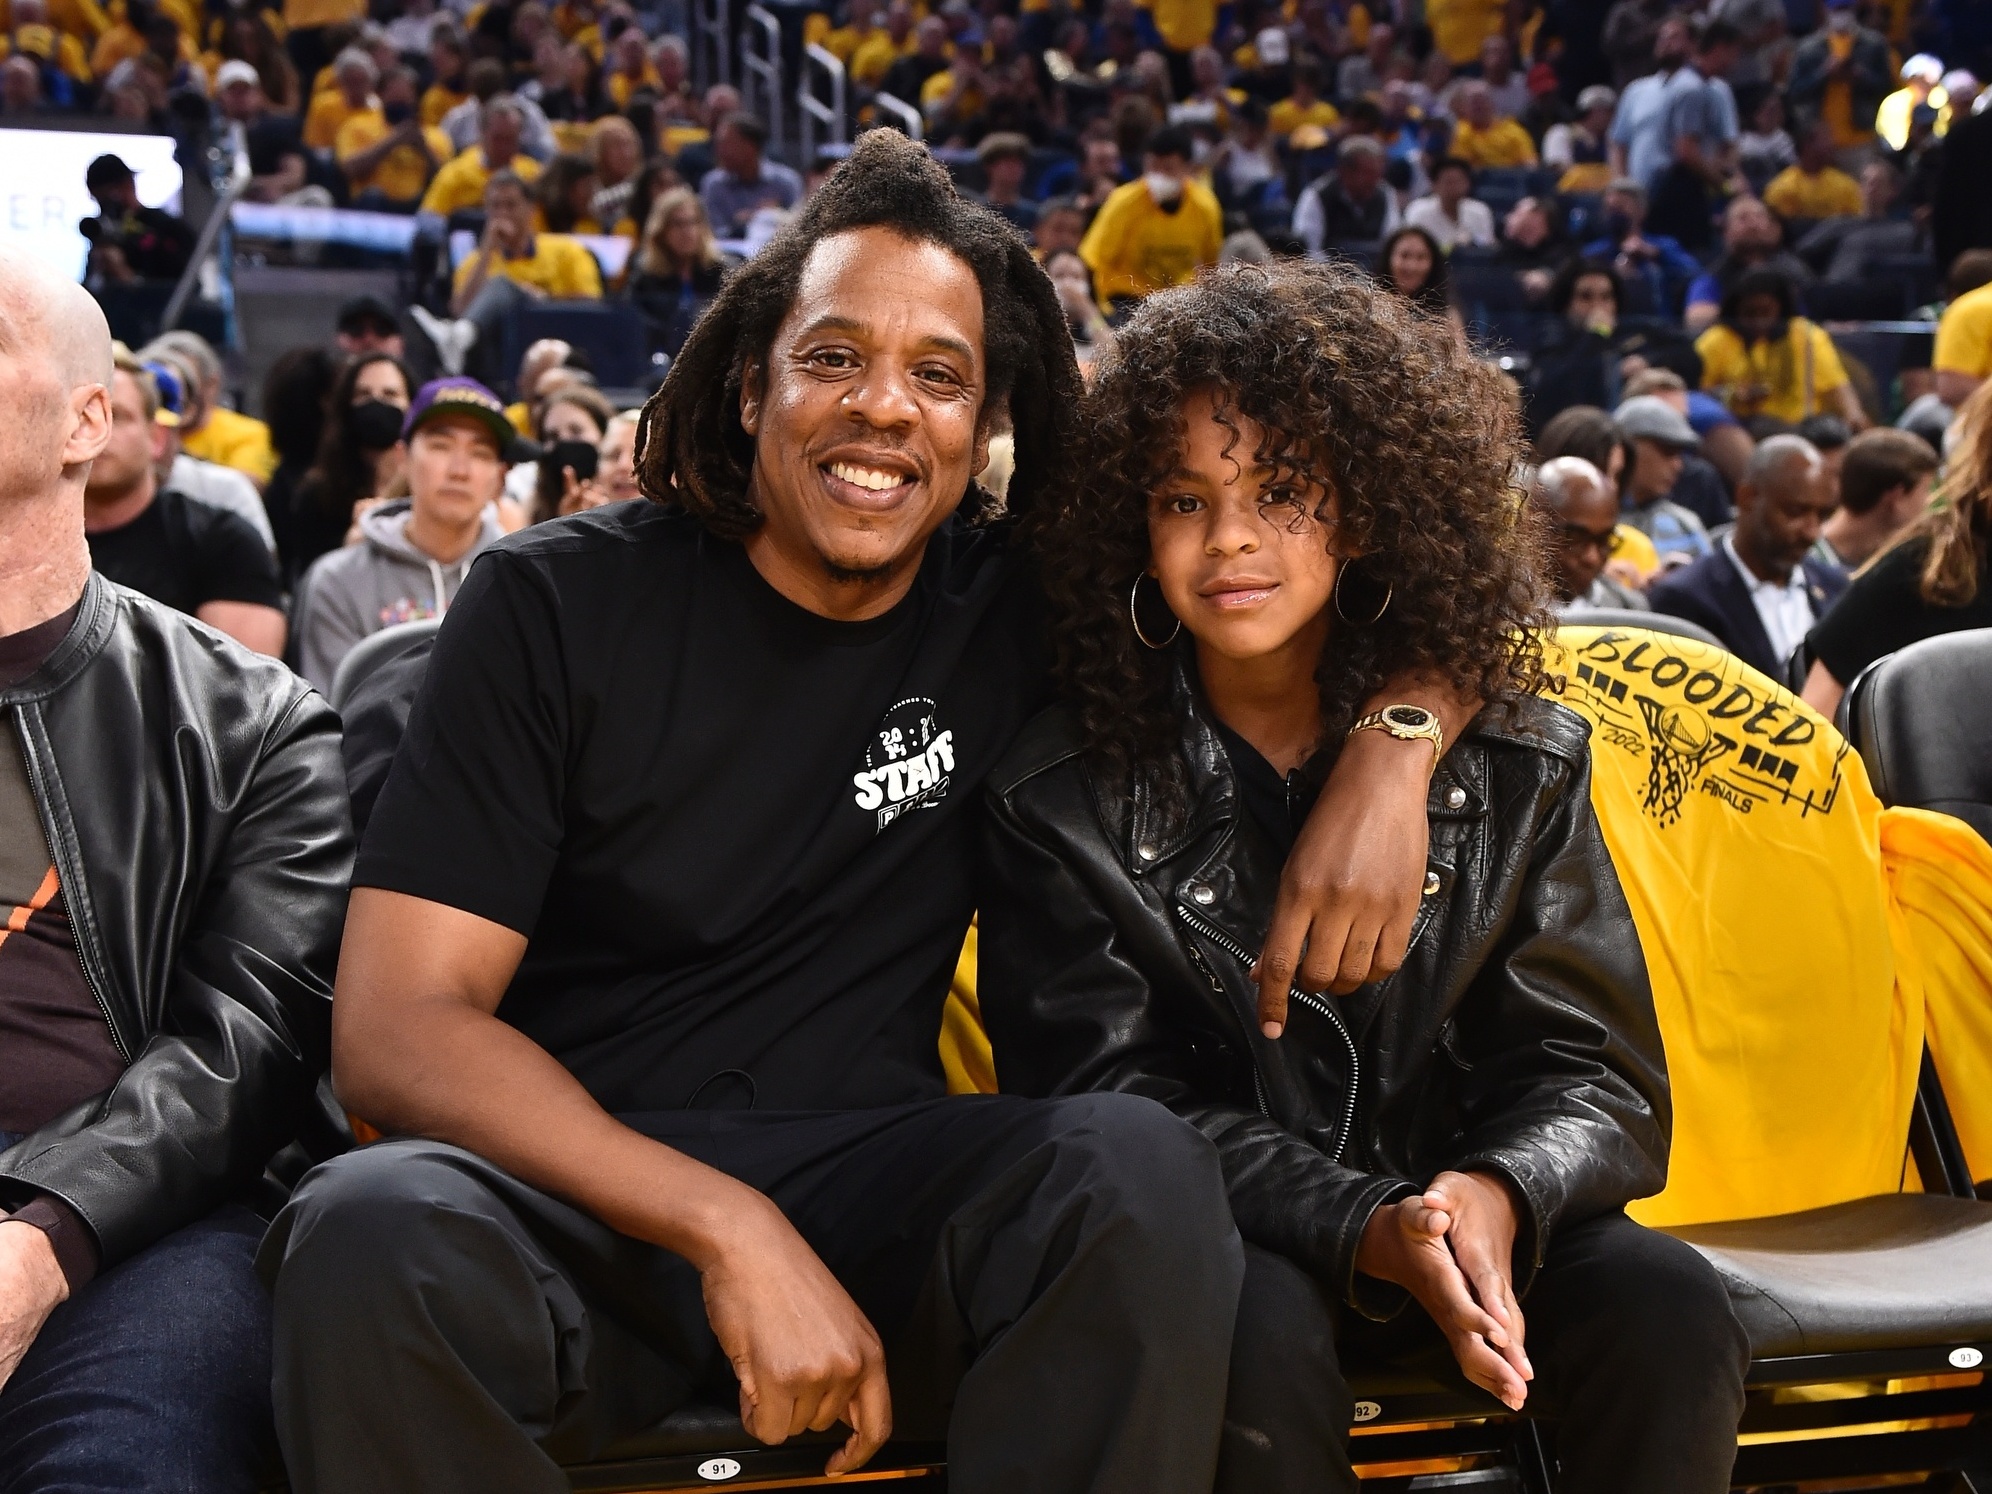 Fotos: Beyoncé e Jay Z assistem a jogo de basquete em NY - 03/11 